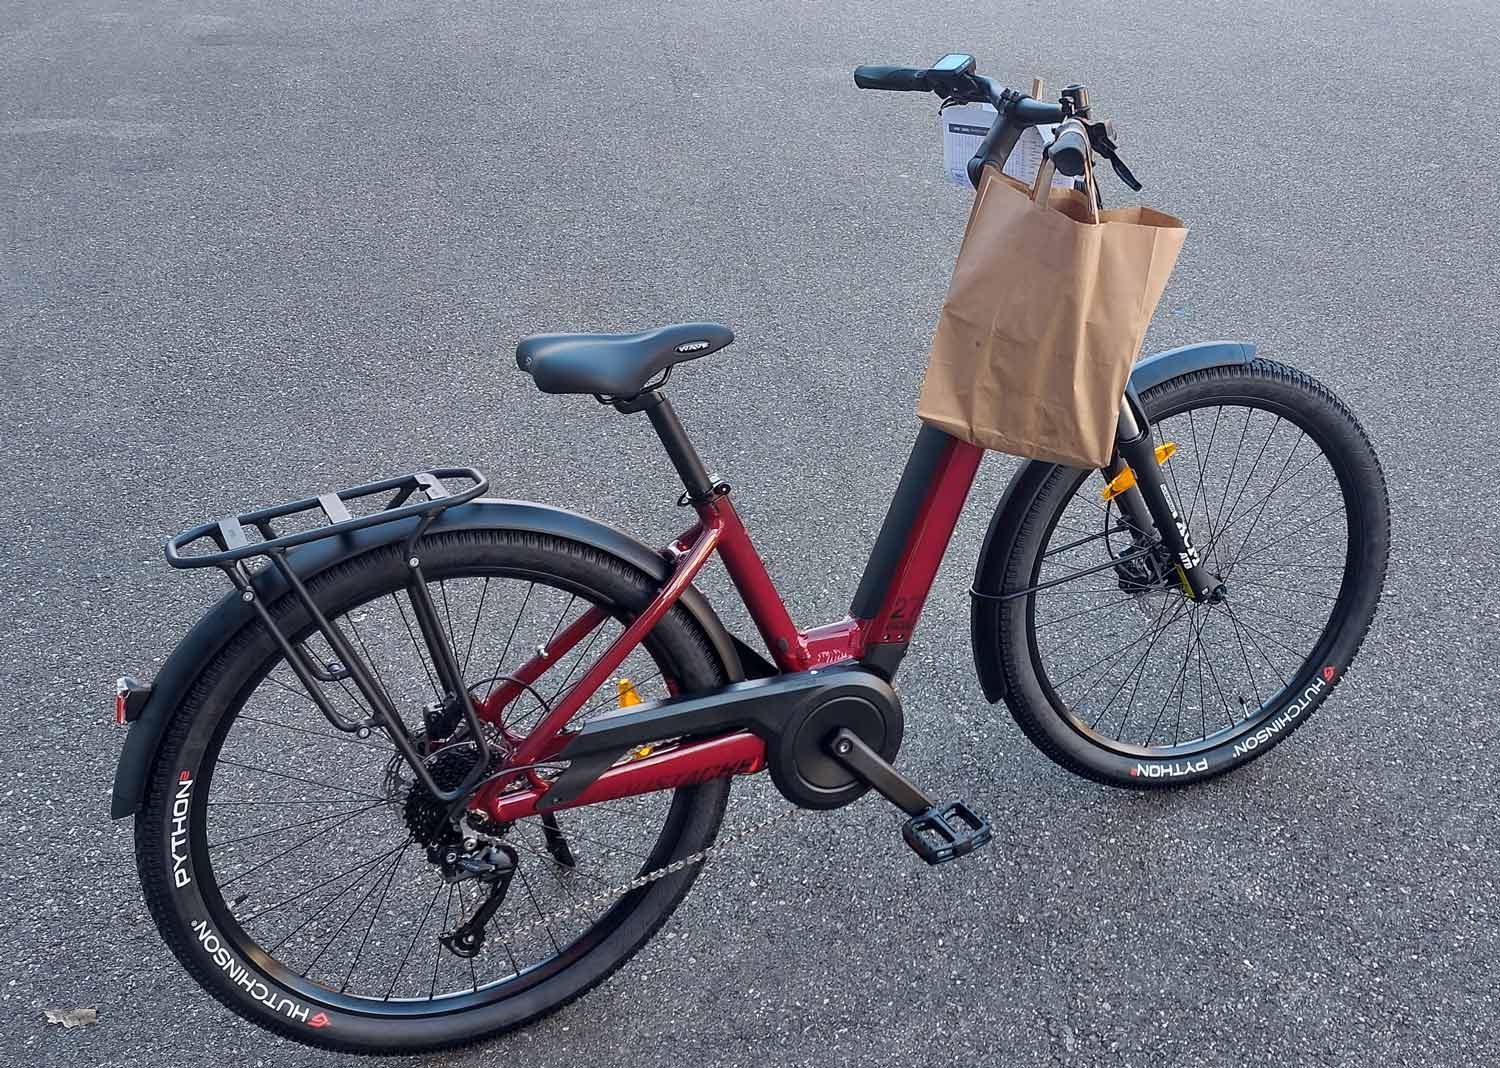 Livraison de votre nouveau vélo à domicile